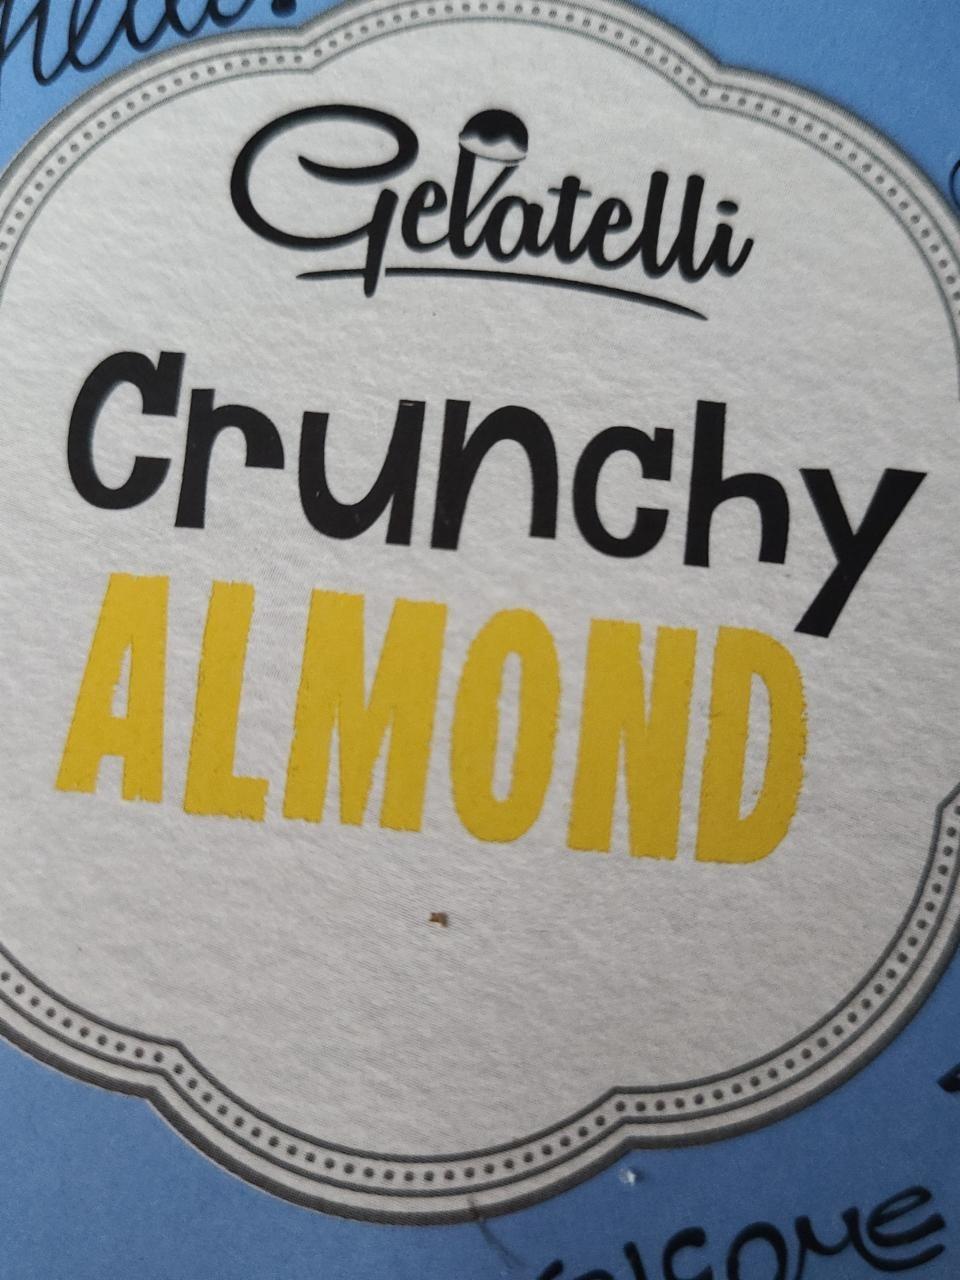 Zdjęcia - Crunchy Almond - Gelatelli